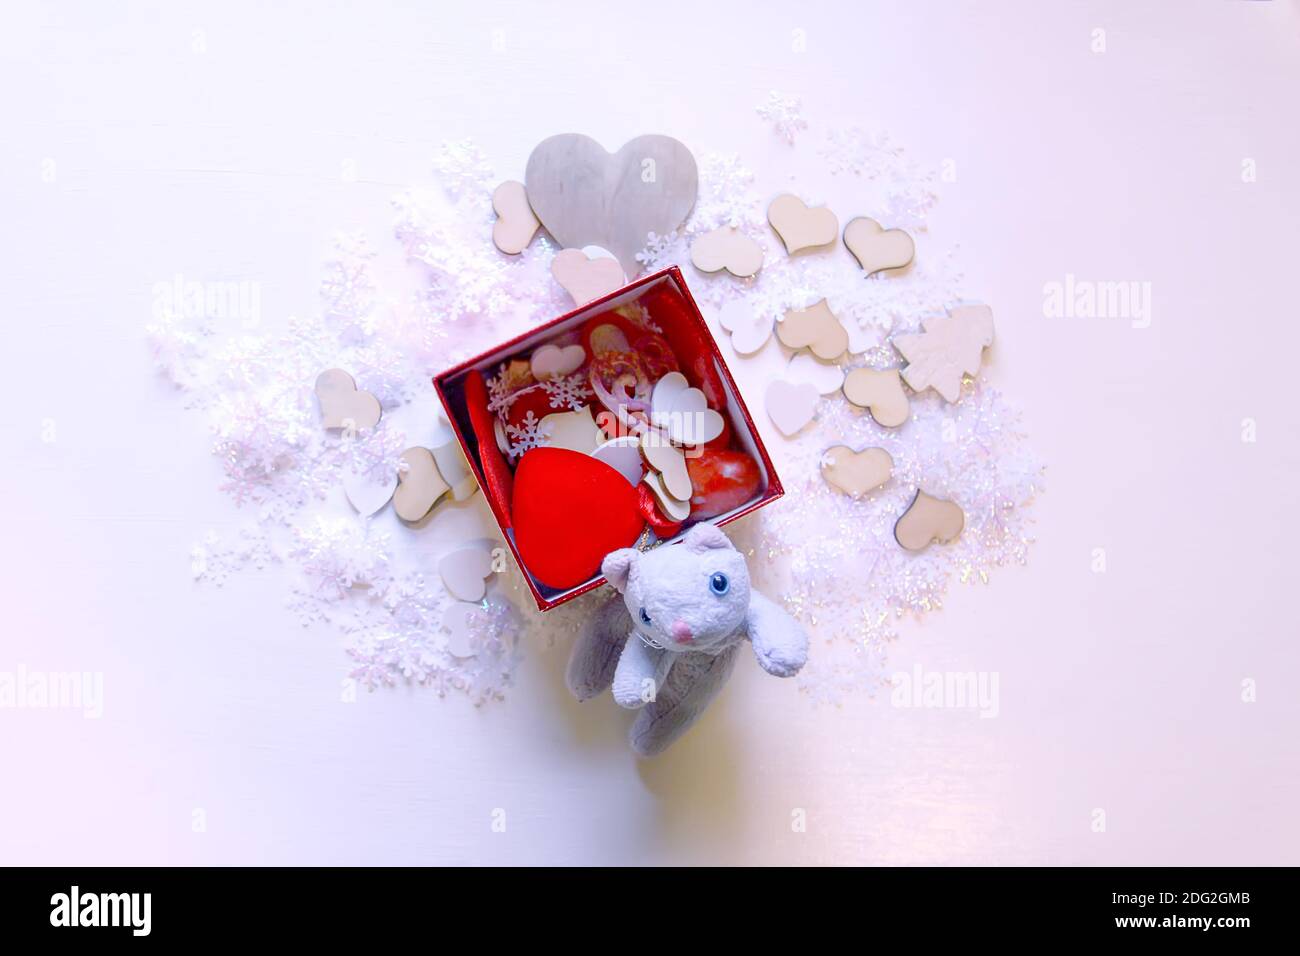 Fiocchi di neve artificiali, gattino giocattolo e cuori decorativi rossi su sfondo bianco morbido. Capodanno e Natale decorazione. Foto Stock